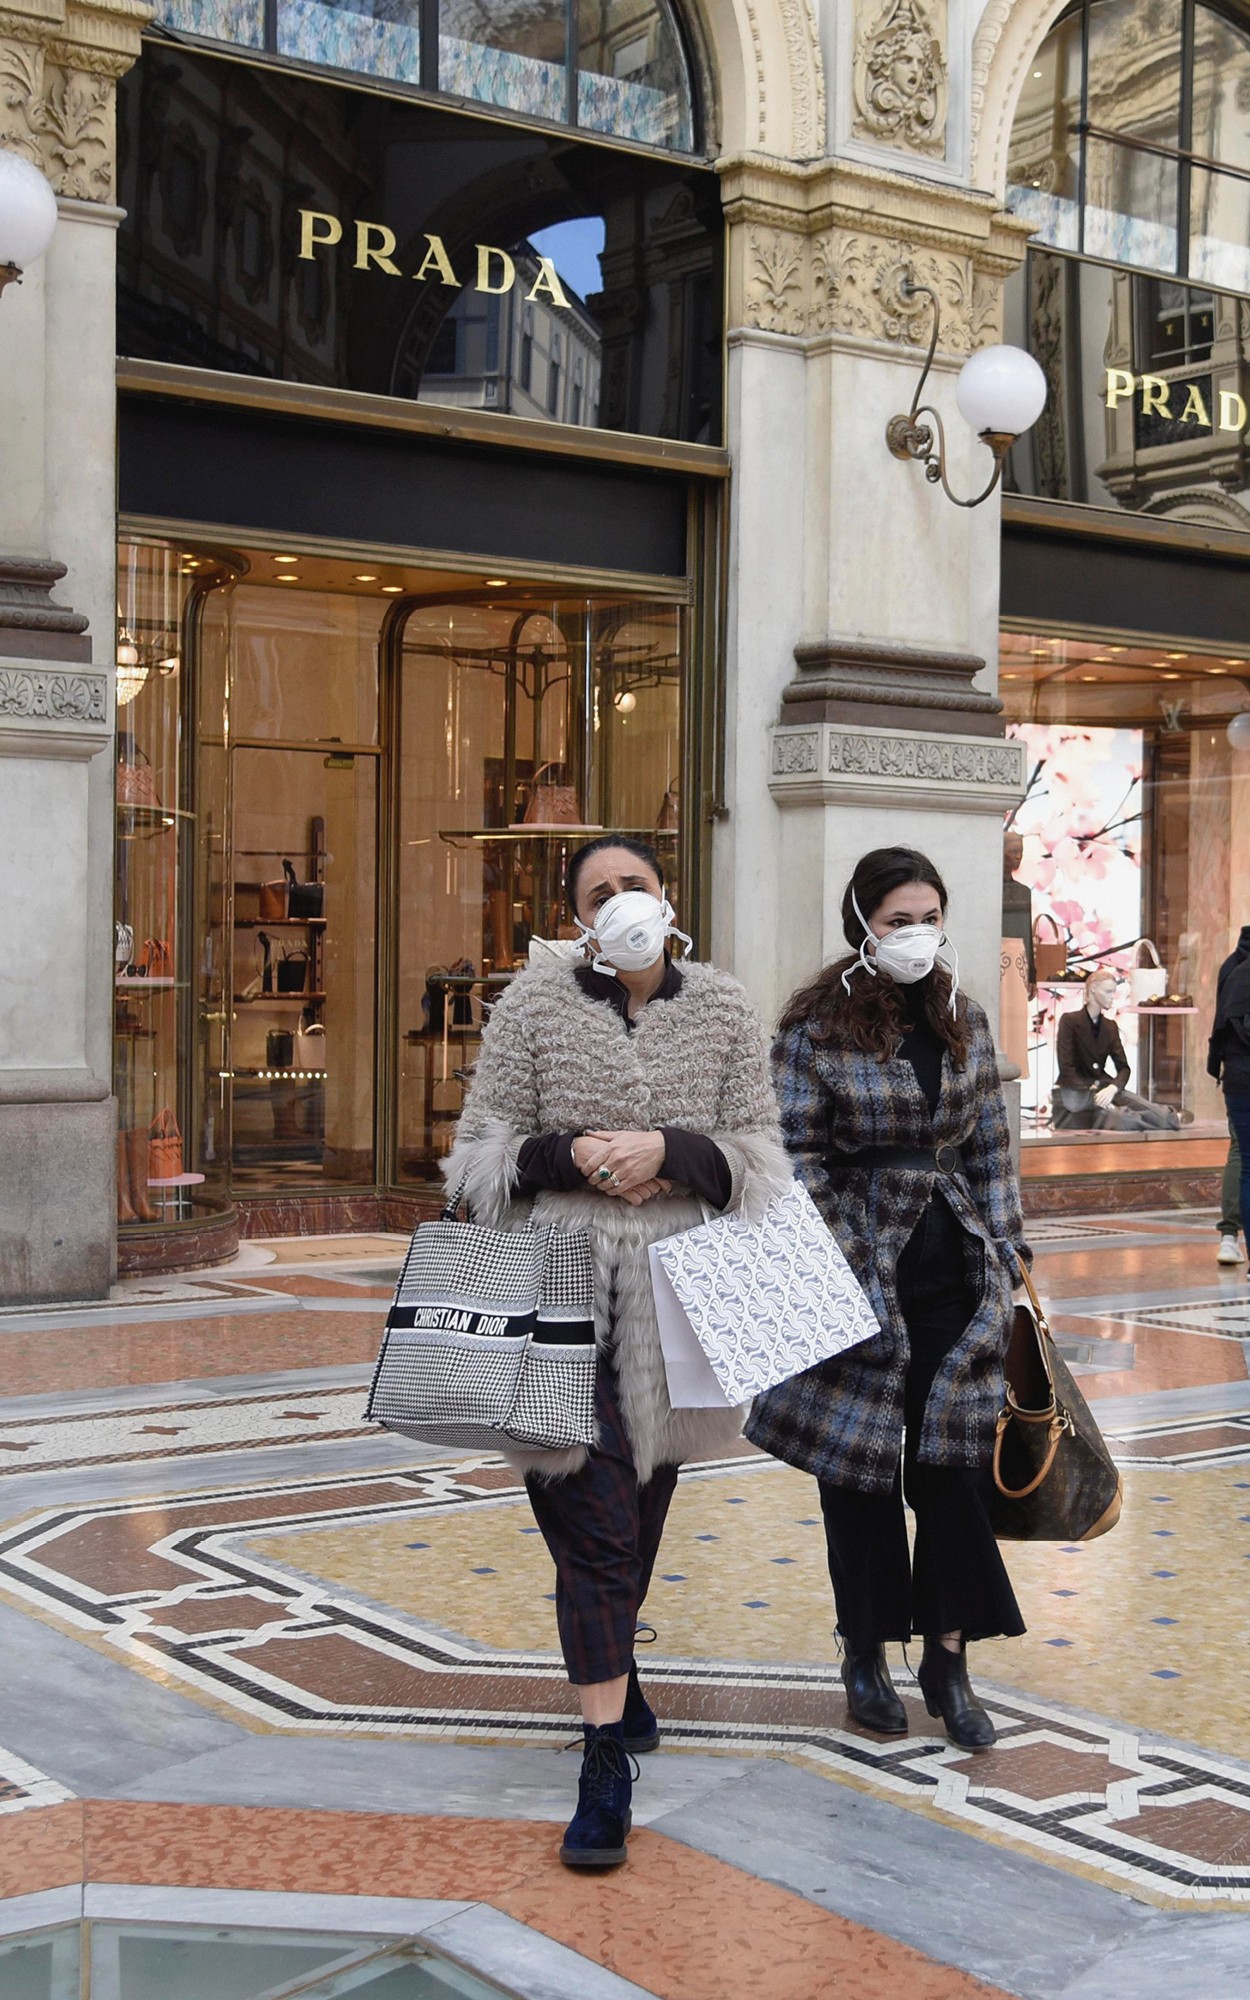 Коронавирус ударил и по Италии. Сколько модная индустрия уже потеряла из-за эпидемии?